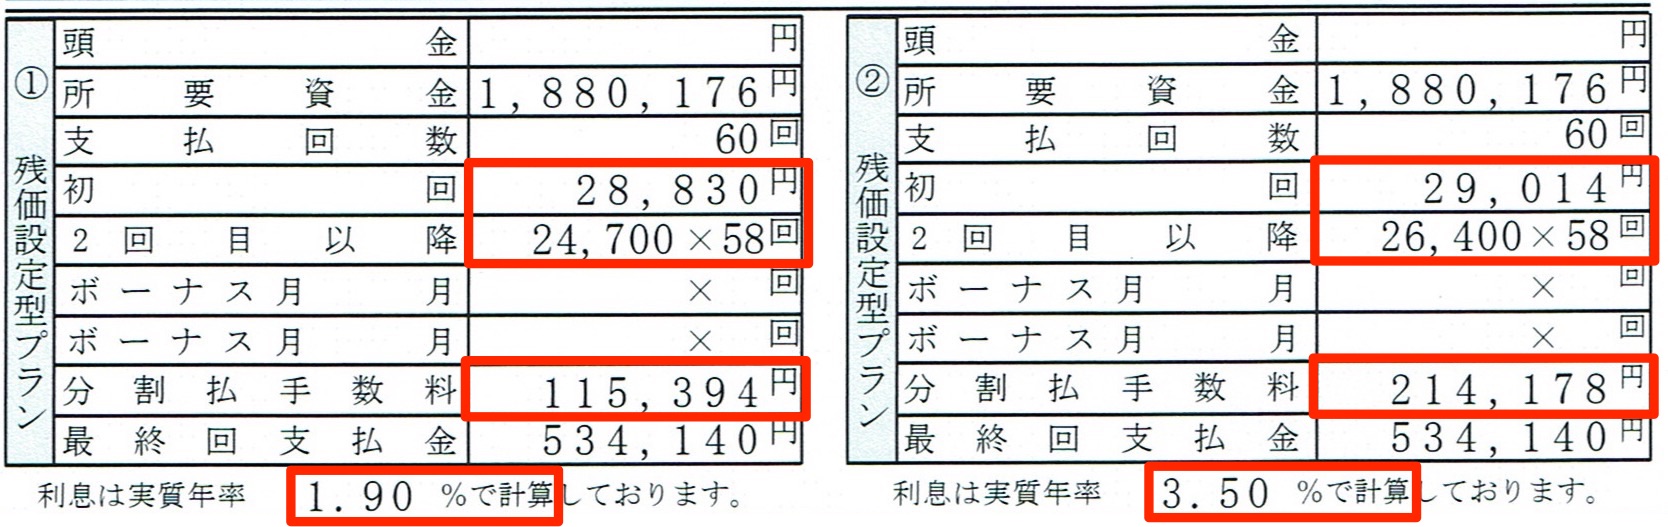 毎月の返済額を抑えられる Hondaの 残クレ 今なら人気の3車種が実質年率1 9 で更にオトクに Honda Local 宮崎県ホンダ カーズブログ